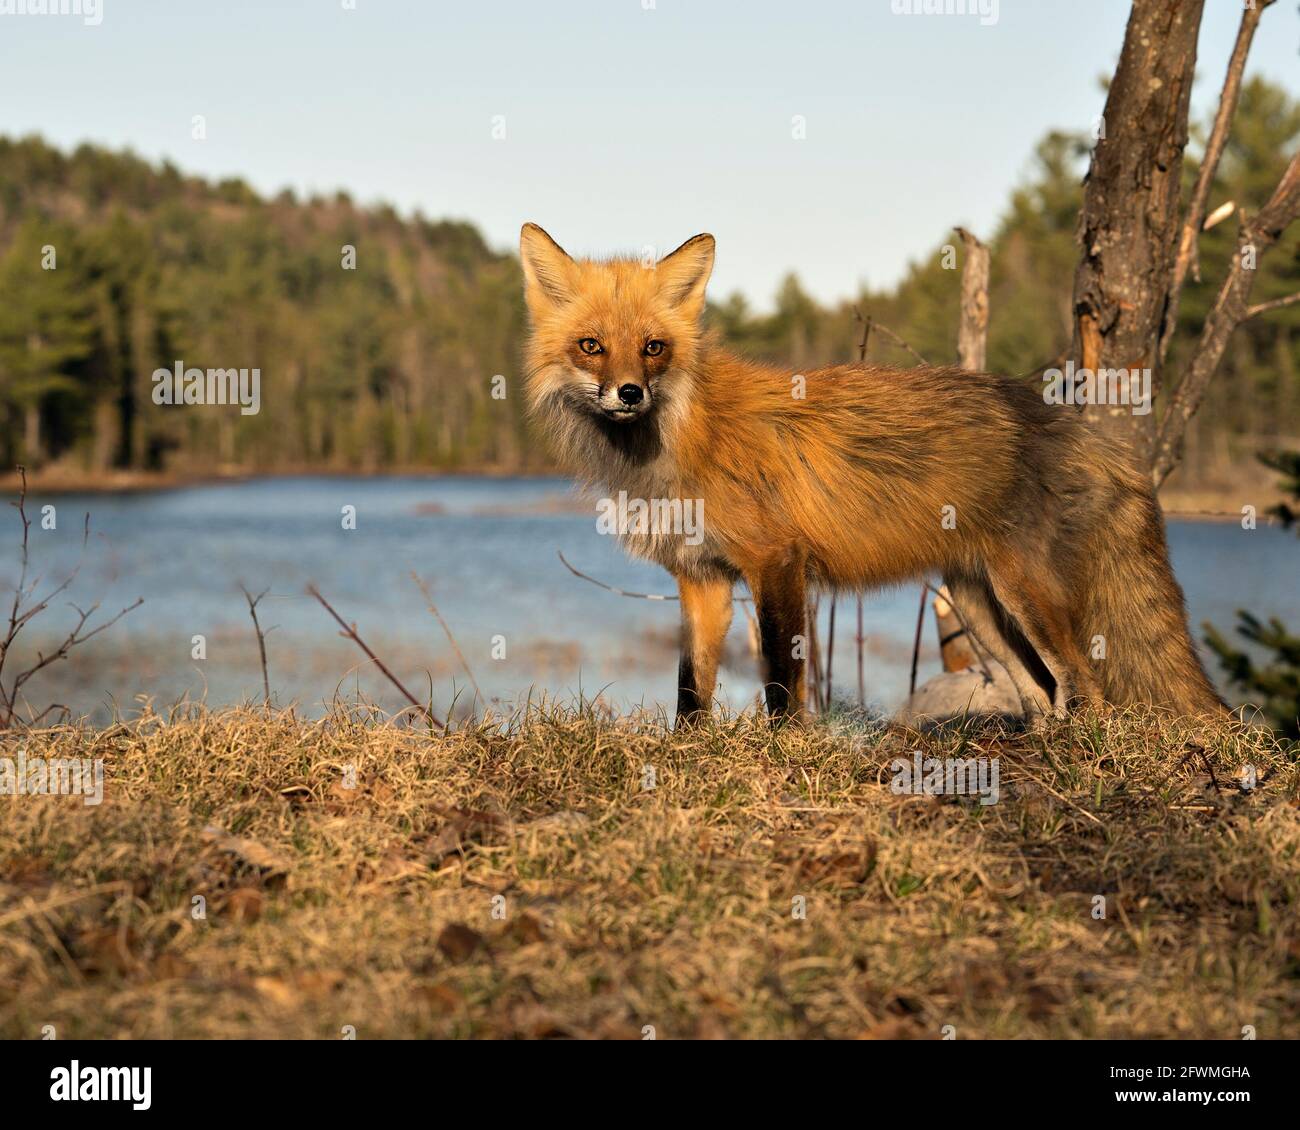 Red Fox primo piano profilo vista laterale con acqua e sfondo della foresta in primavera nel suo ambiente e habitat. Immagine FOX. Immagine. Verticale. Foto Stock